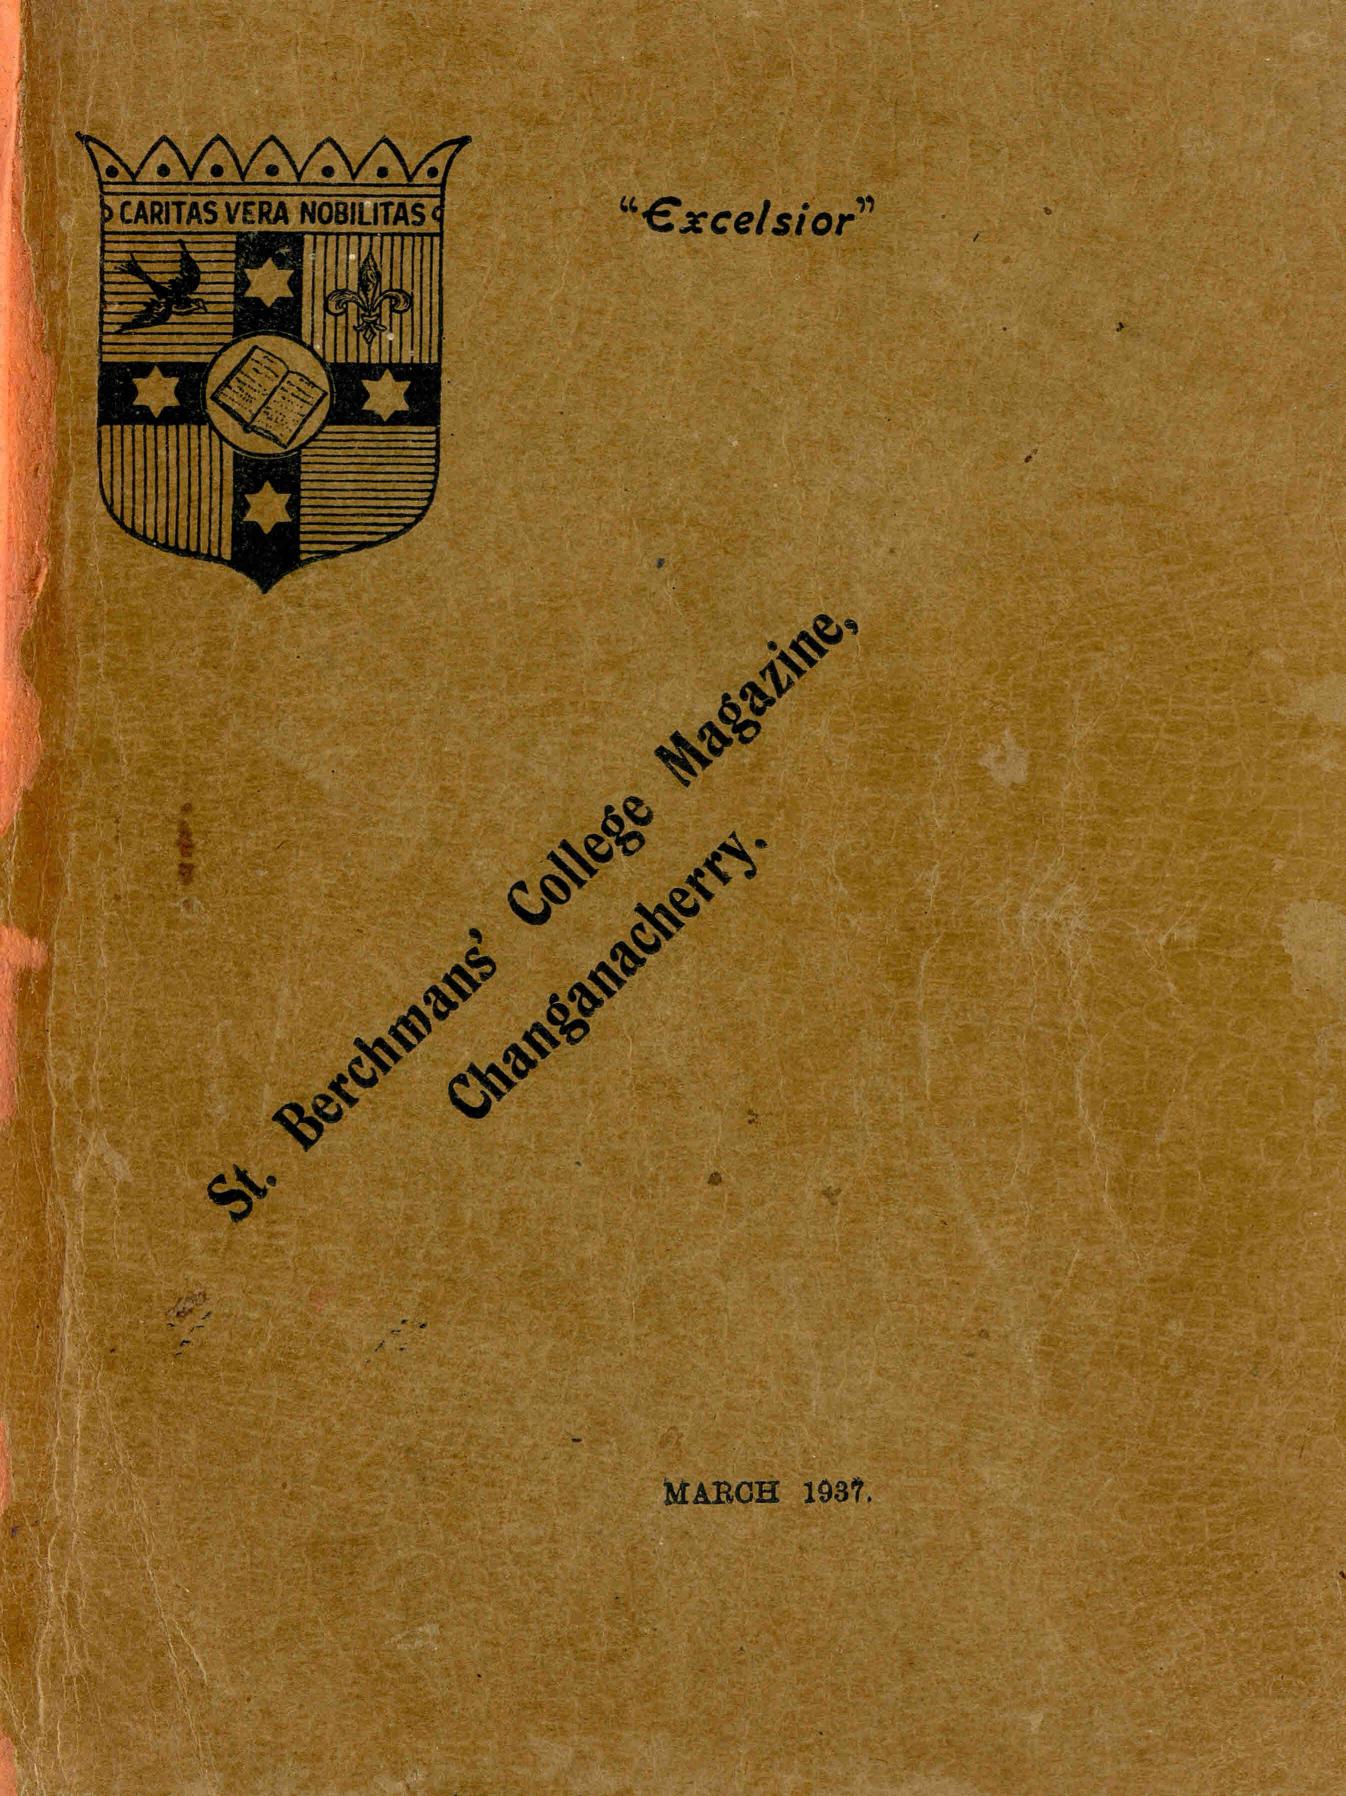 1937 - Excelsior - St. Berchmans College Magazine Changanacherry